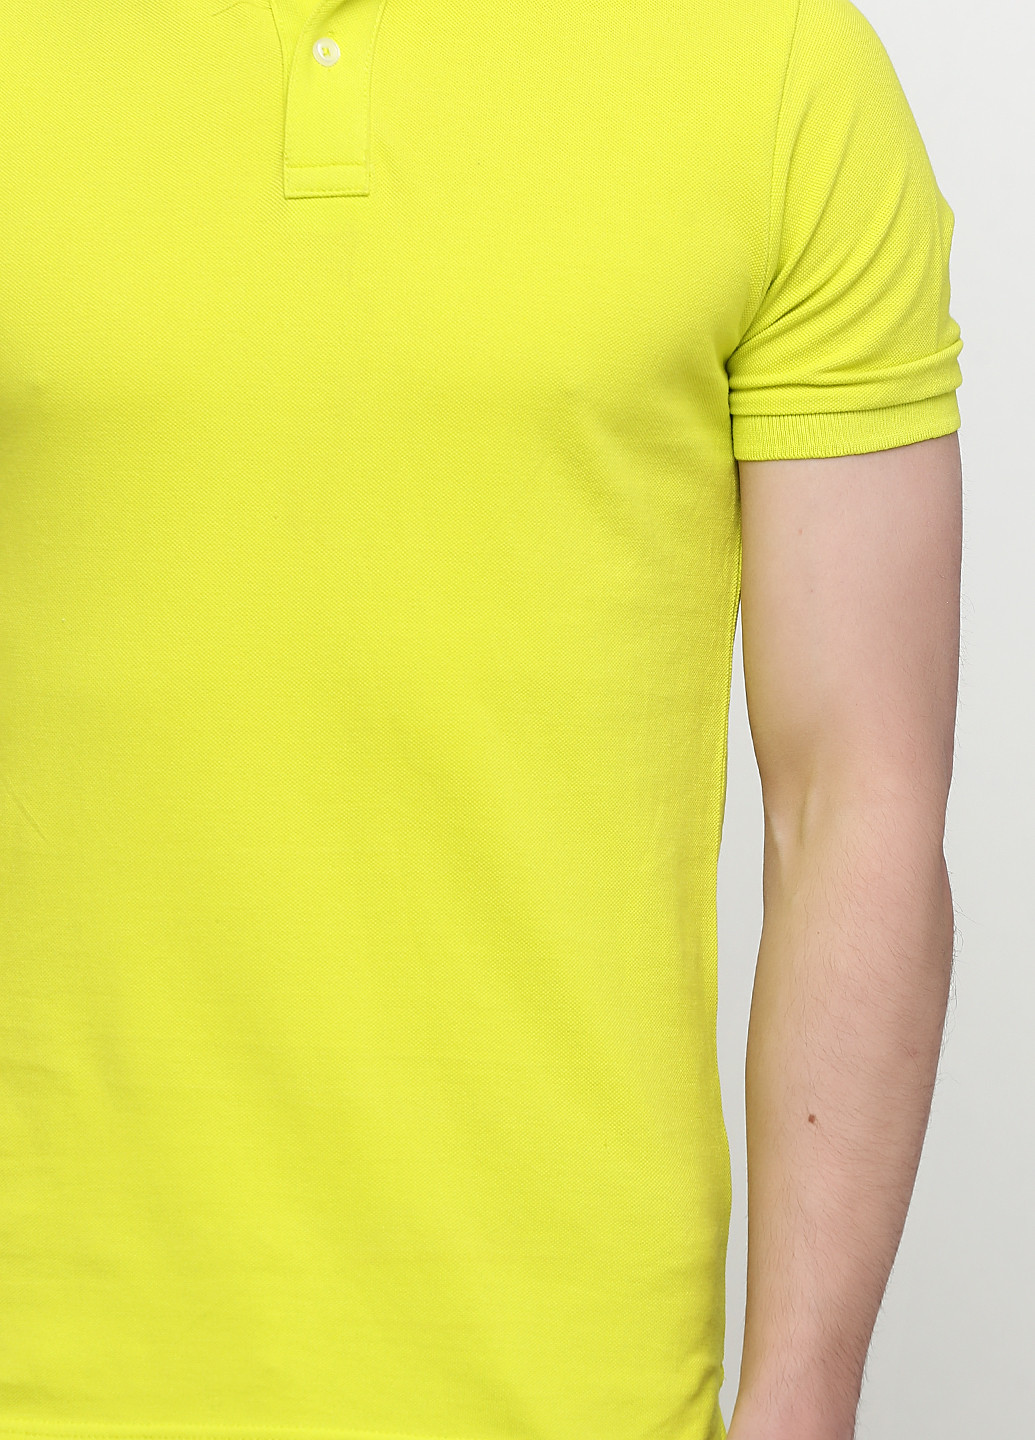 Кислотно-жёлтая футболка-поло для мужчин C&A однотонная